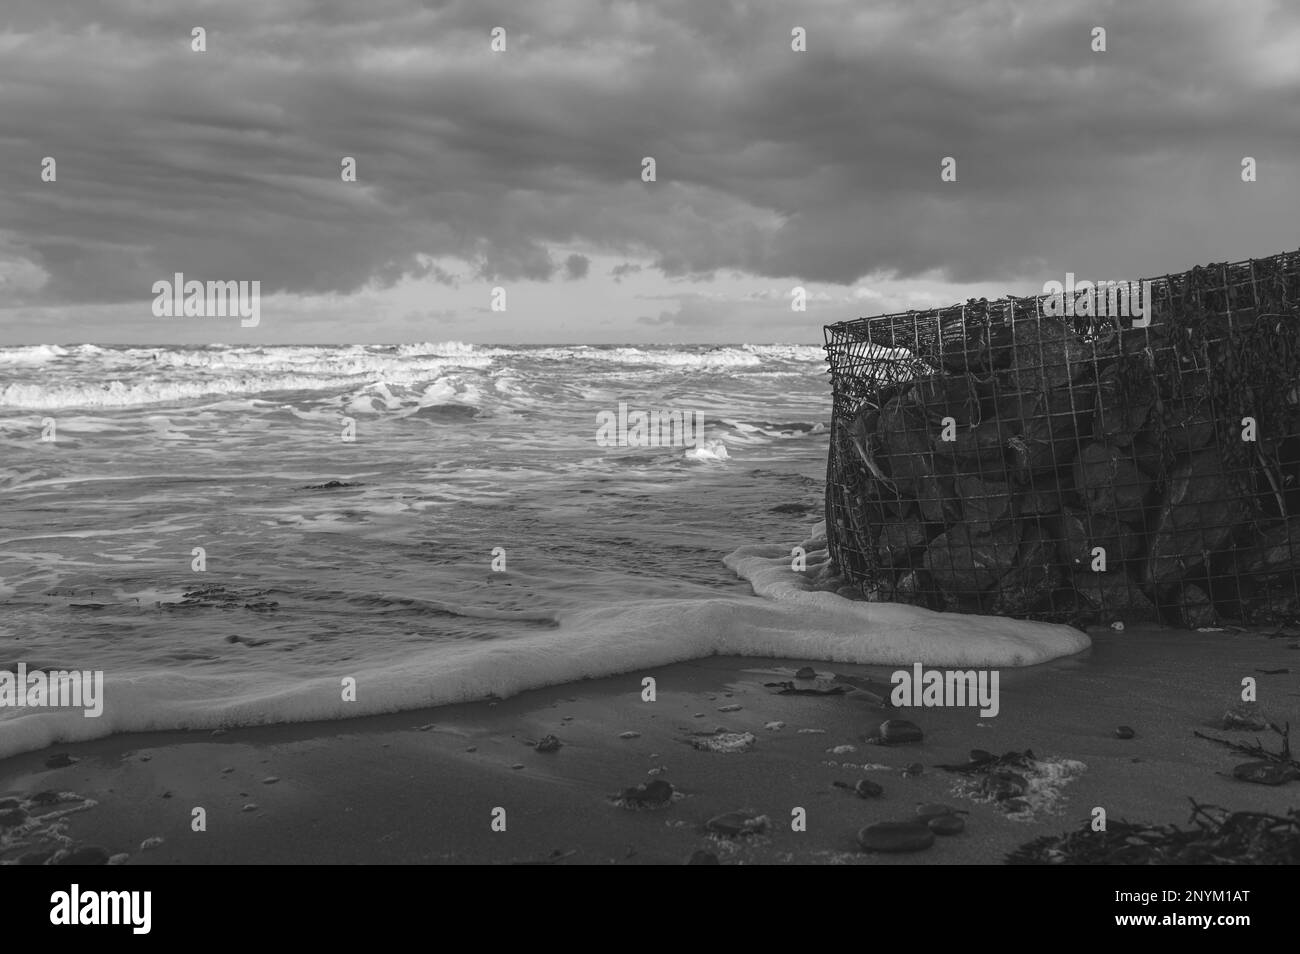 Panier de gabion avec des pierres sur une plage à Walton sur la Naze dans l'Essex. Froid, hiver, jour venteux. Les vagues s'écrasant contre le panier de gabion. Banque D'Images